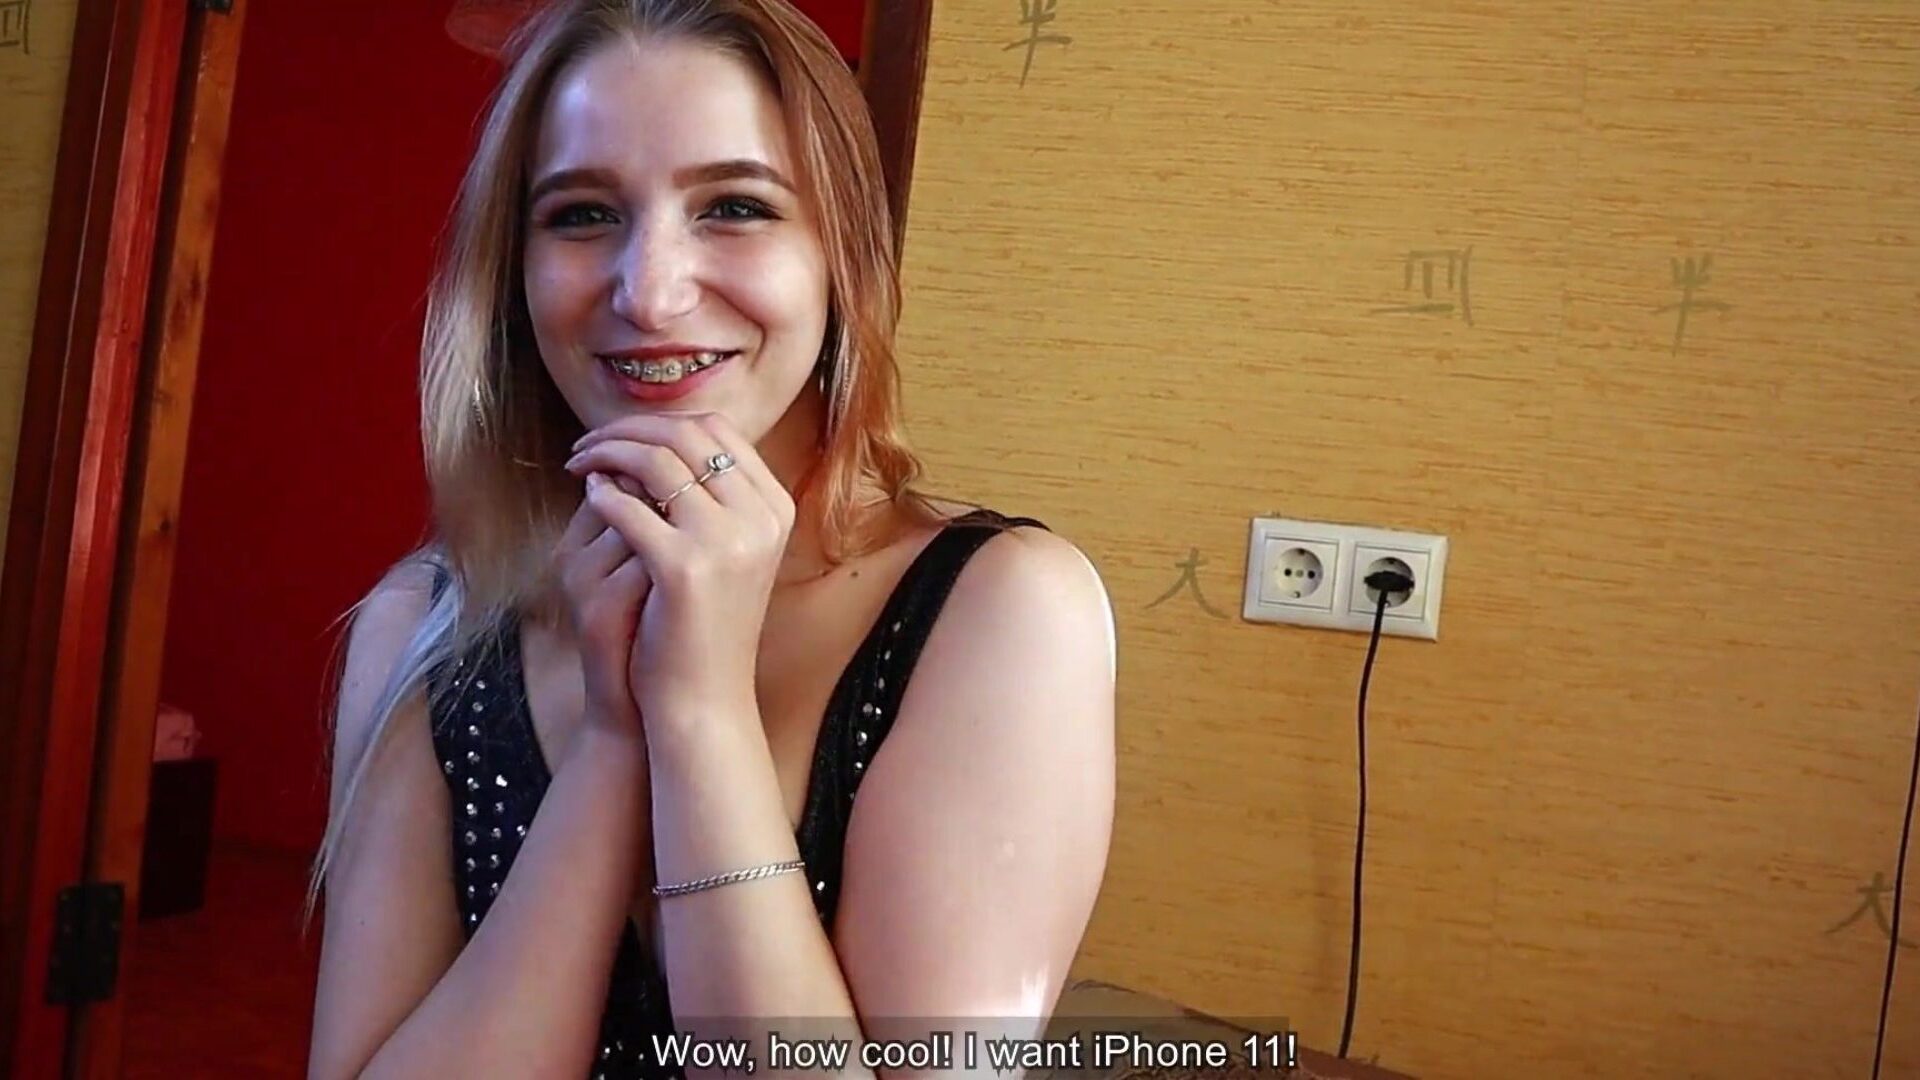 krásná dívka děkuje svému příteli kouřením a sexem za nový iphone | cum na obličeji a spolknout